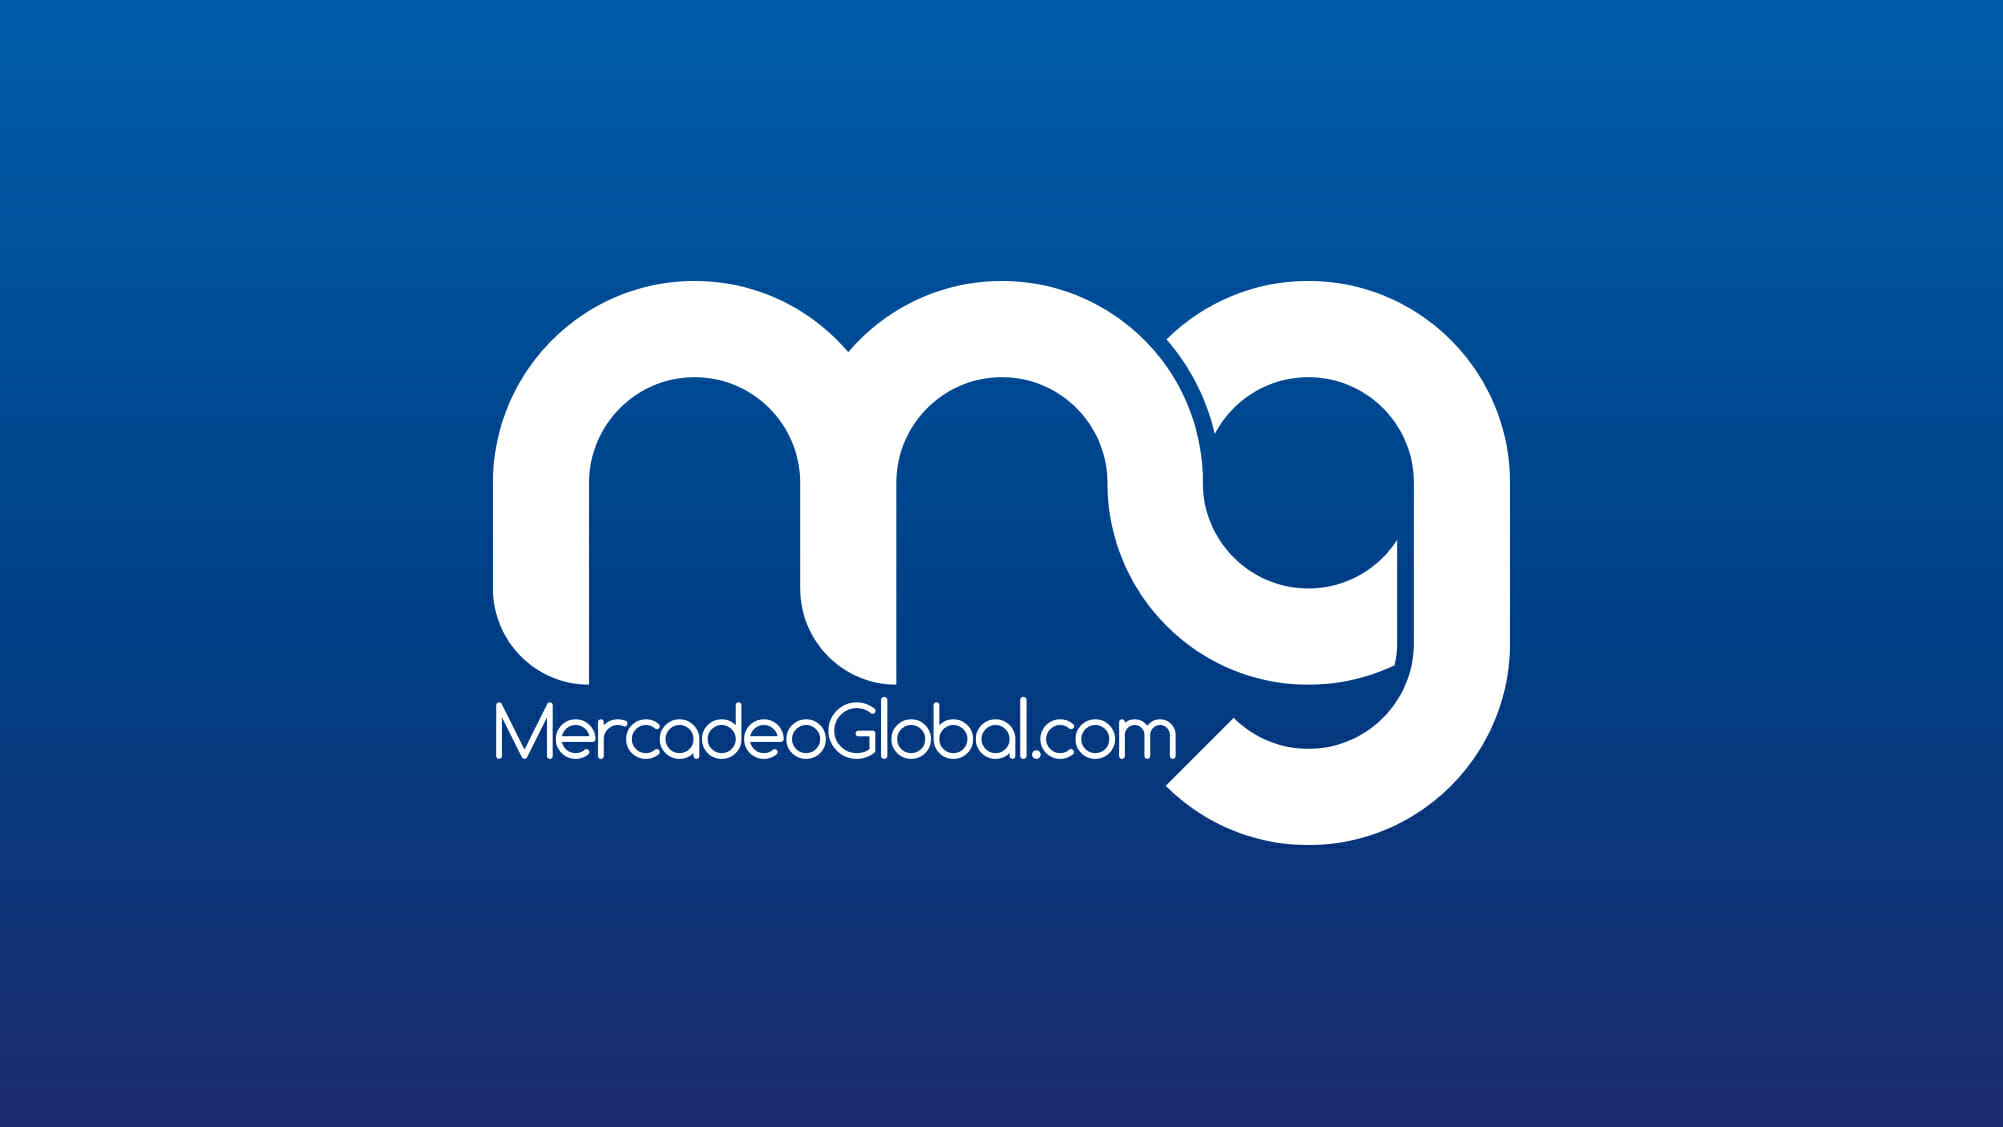 (c) Mercadeoglobal.com